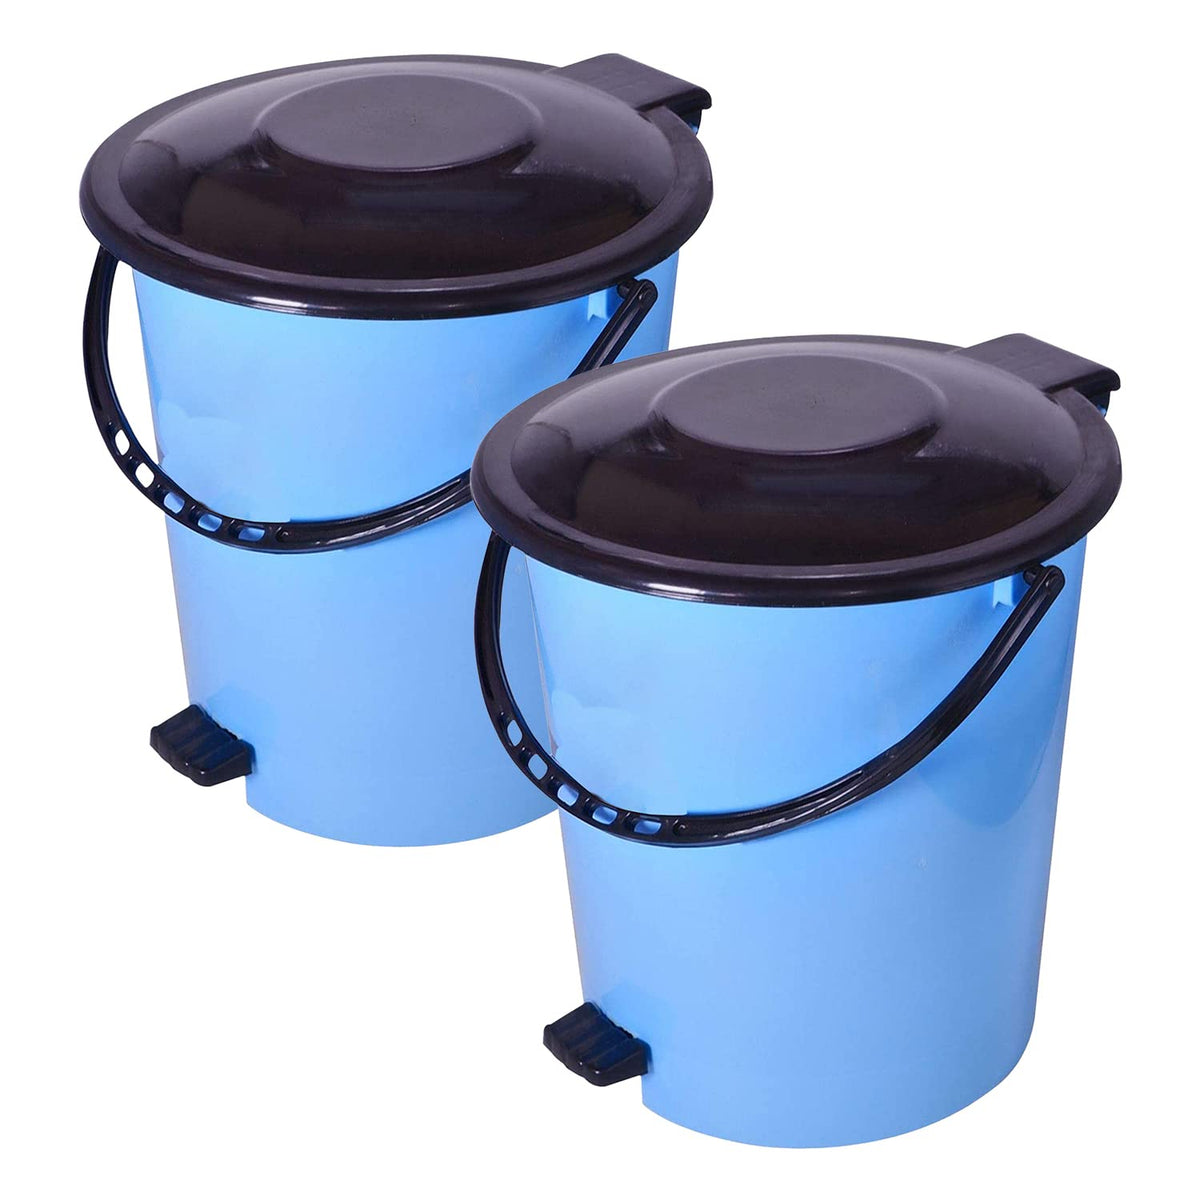 Kuber Industries Pedal Dustbin|Plastic Pedal Dustbin|Kitchen Waste Paper Bin|Dustbin For Bedroom|5 Liter Dustbin|Pack of 2 (Sky Blue)